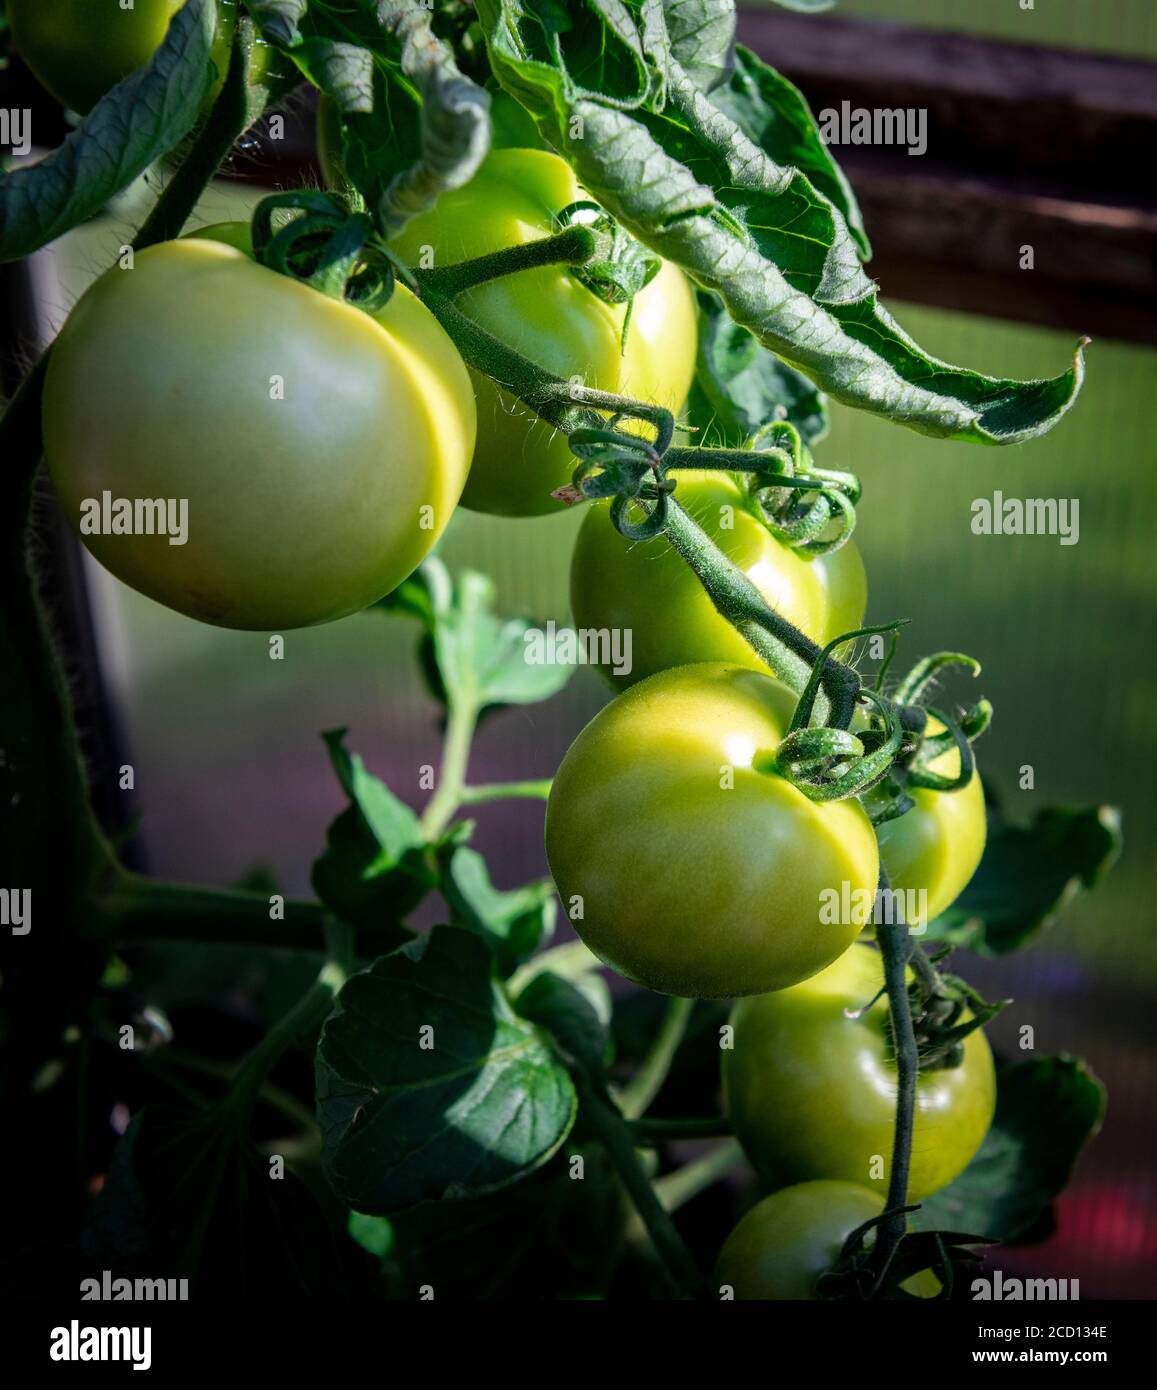 Tomates non mûres poussant dans une serre domestique Royaume-Uni Banque D'Images